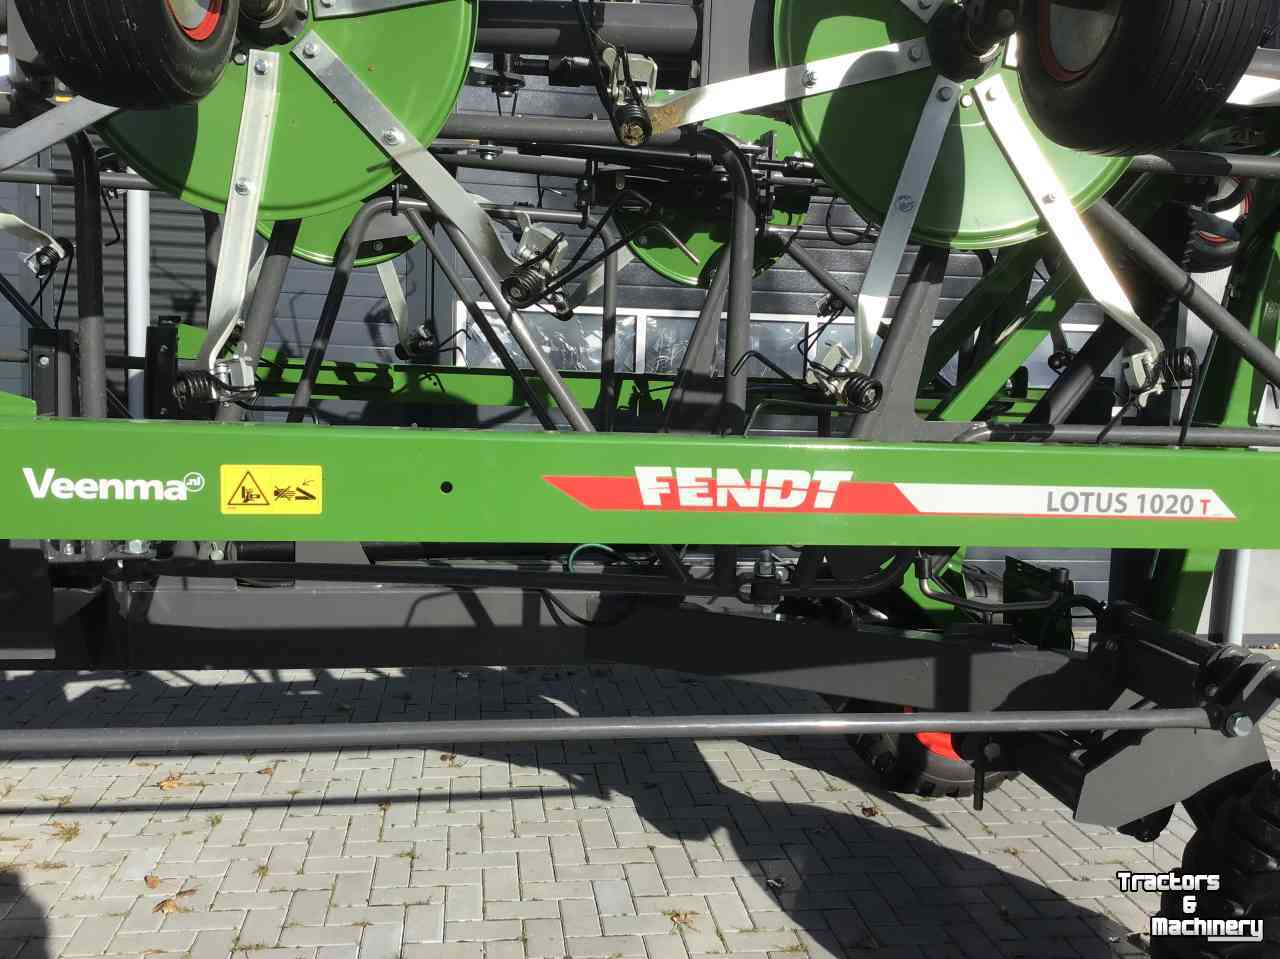 Faneur Fendt Demo!  Lotus 1020T